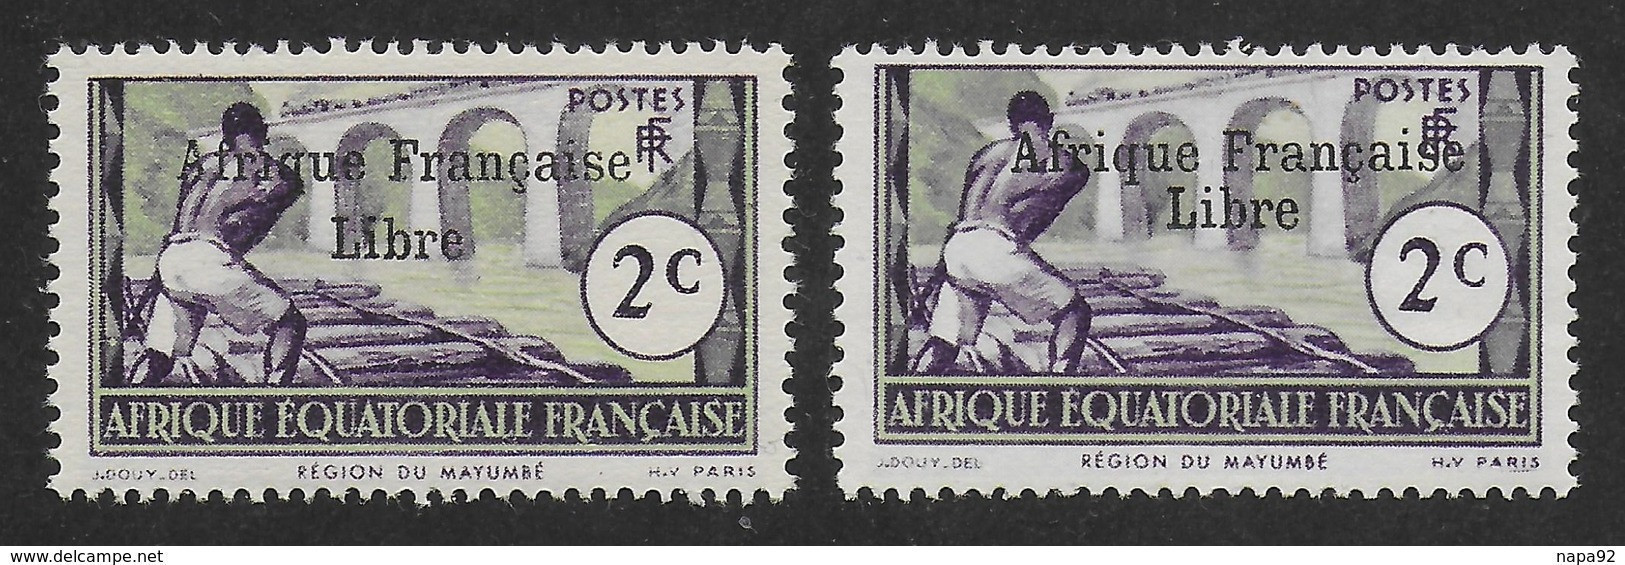 AFRIQUE EQUATORIALE FRANCAISE - AEF - A.E.F. - 1941 - YT 157** - 2ème TIRAGE - Ongebruikt